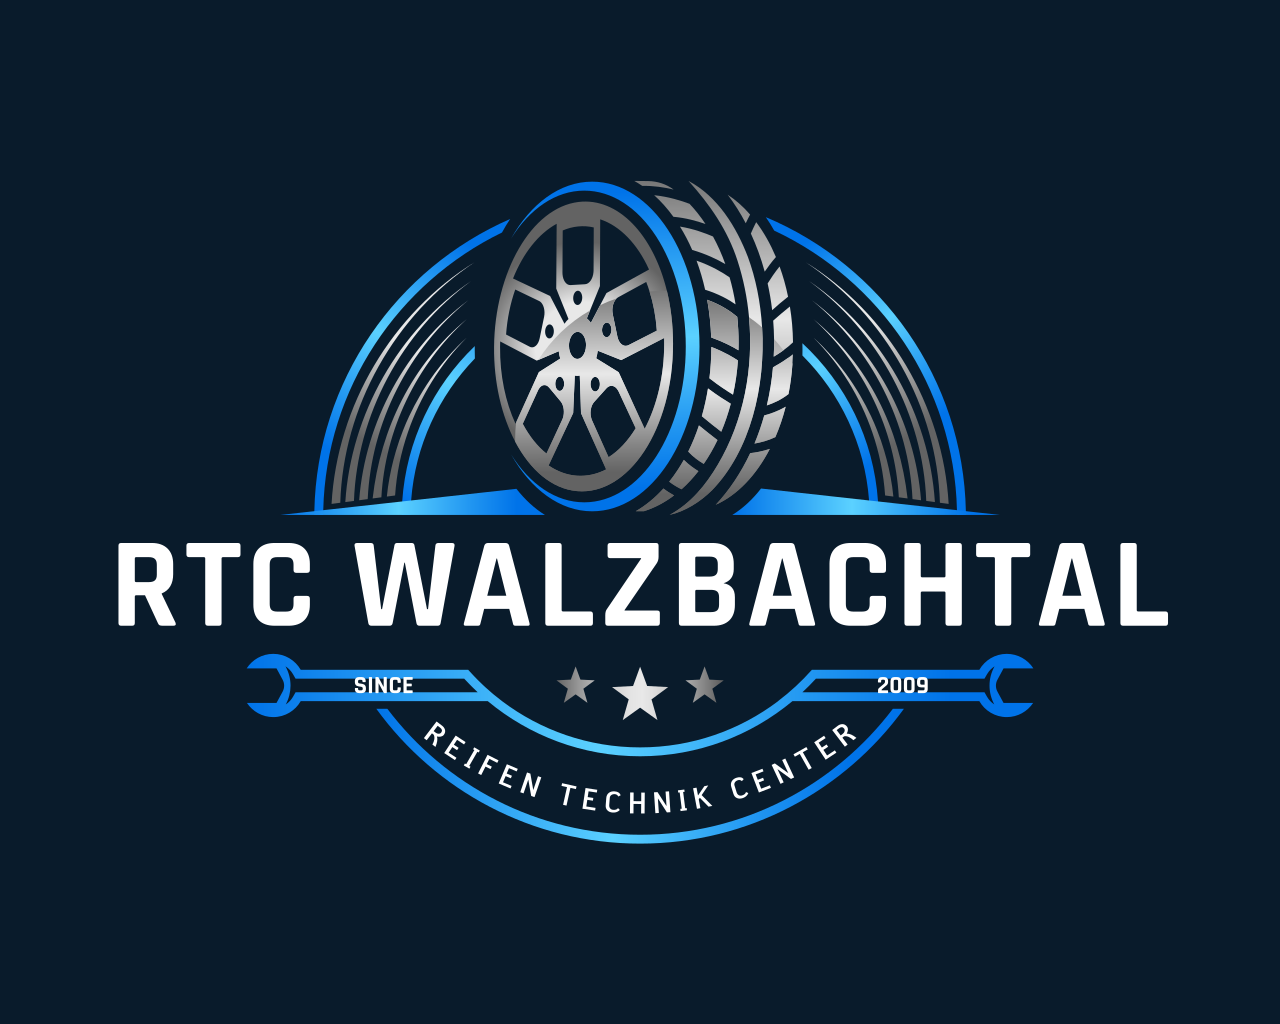 RTC Walzbachtal